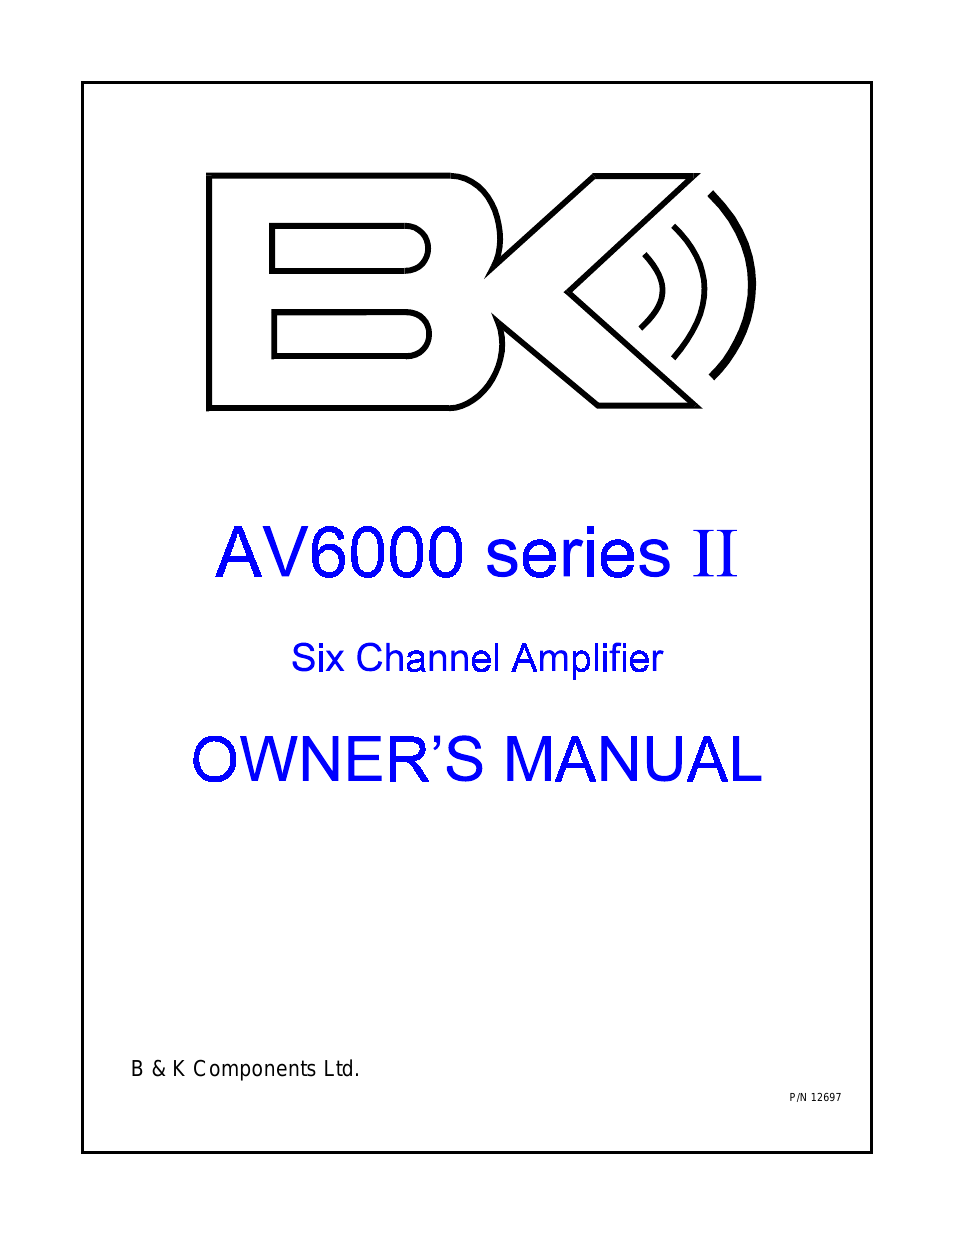 AV6000 Series II